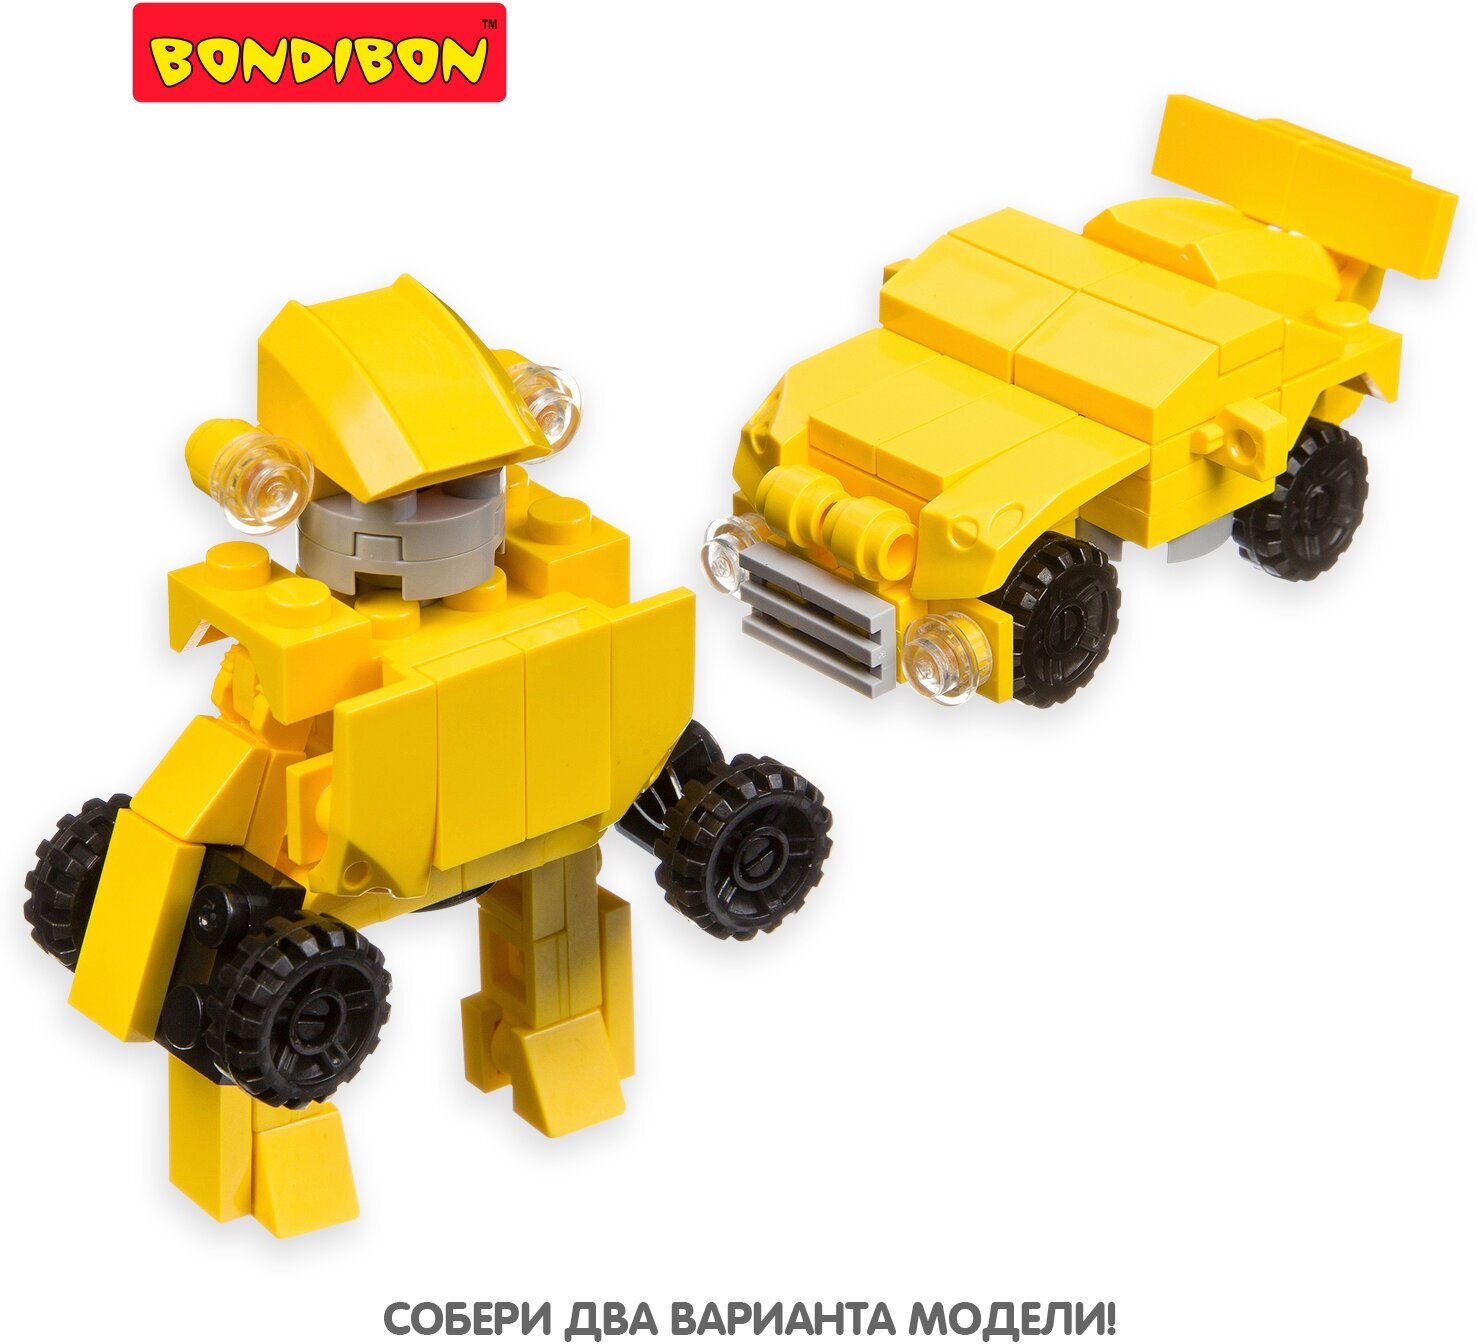 Мини-конструктор в жёлтом яйце, 2в1 Робот-машина Bondibon - фото №3